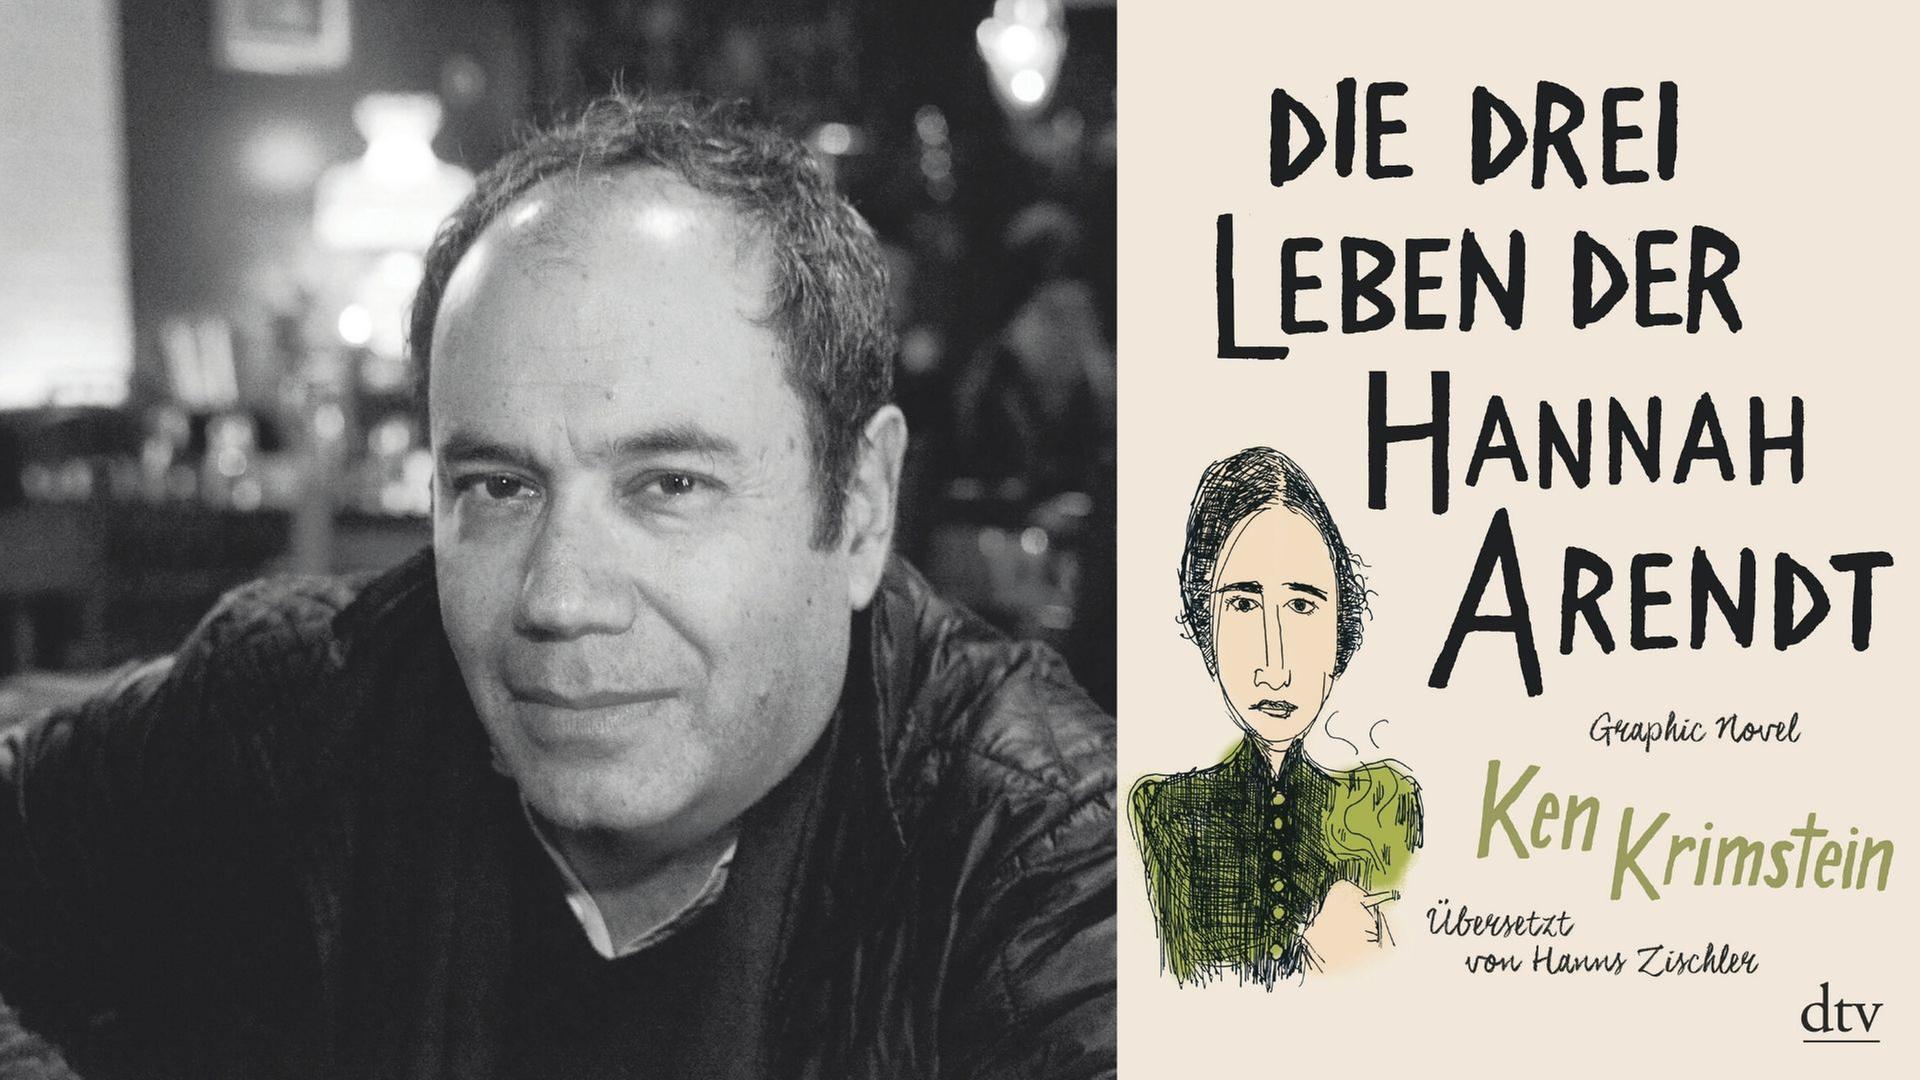 Der Schriftsteller Ken Krimstein und sein Buch: "Die drei Leben der Hannah Arendt"